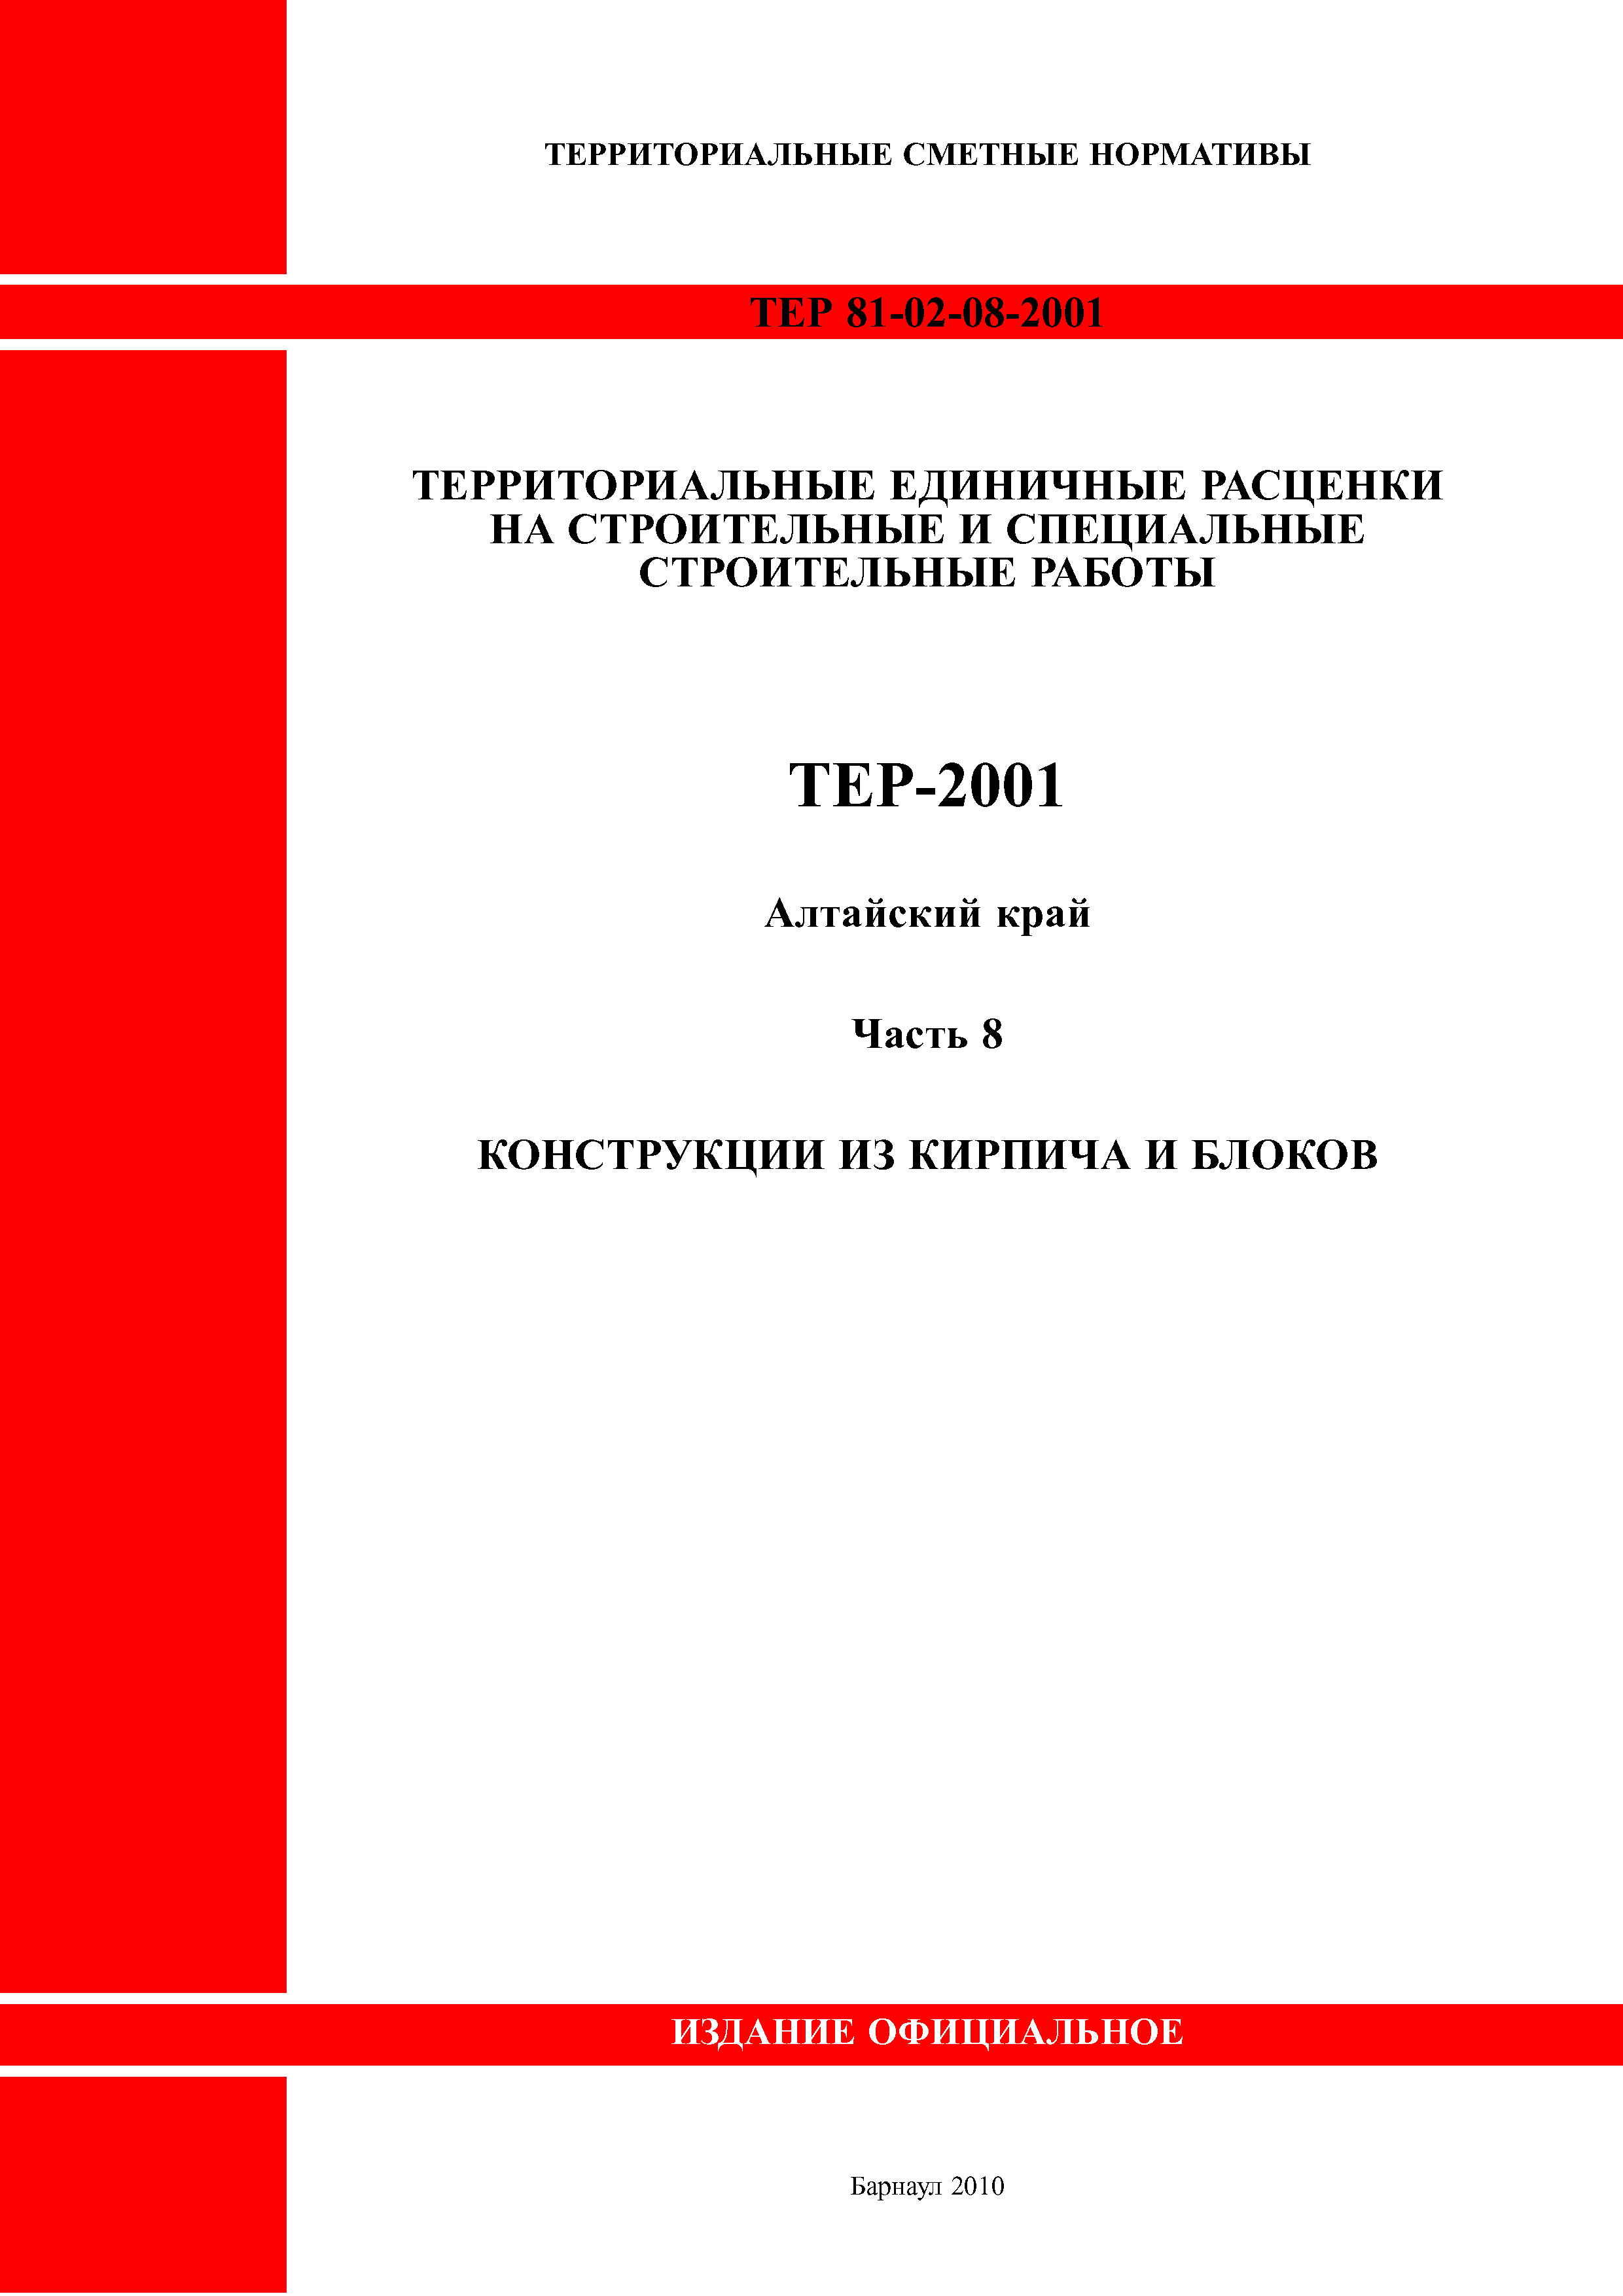 ТЕР Алтайский край 2001-08